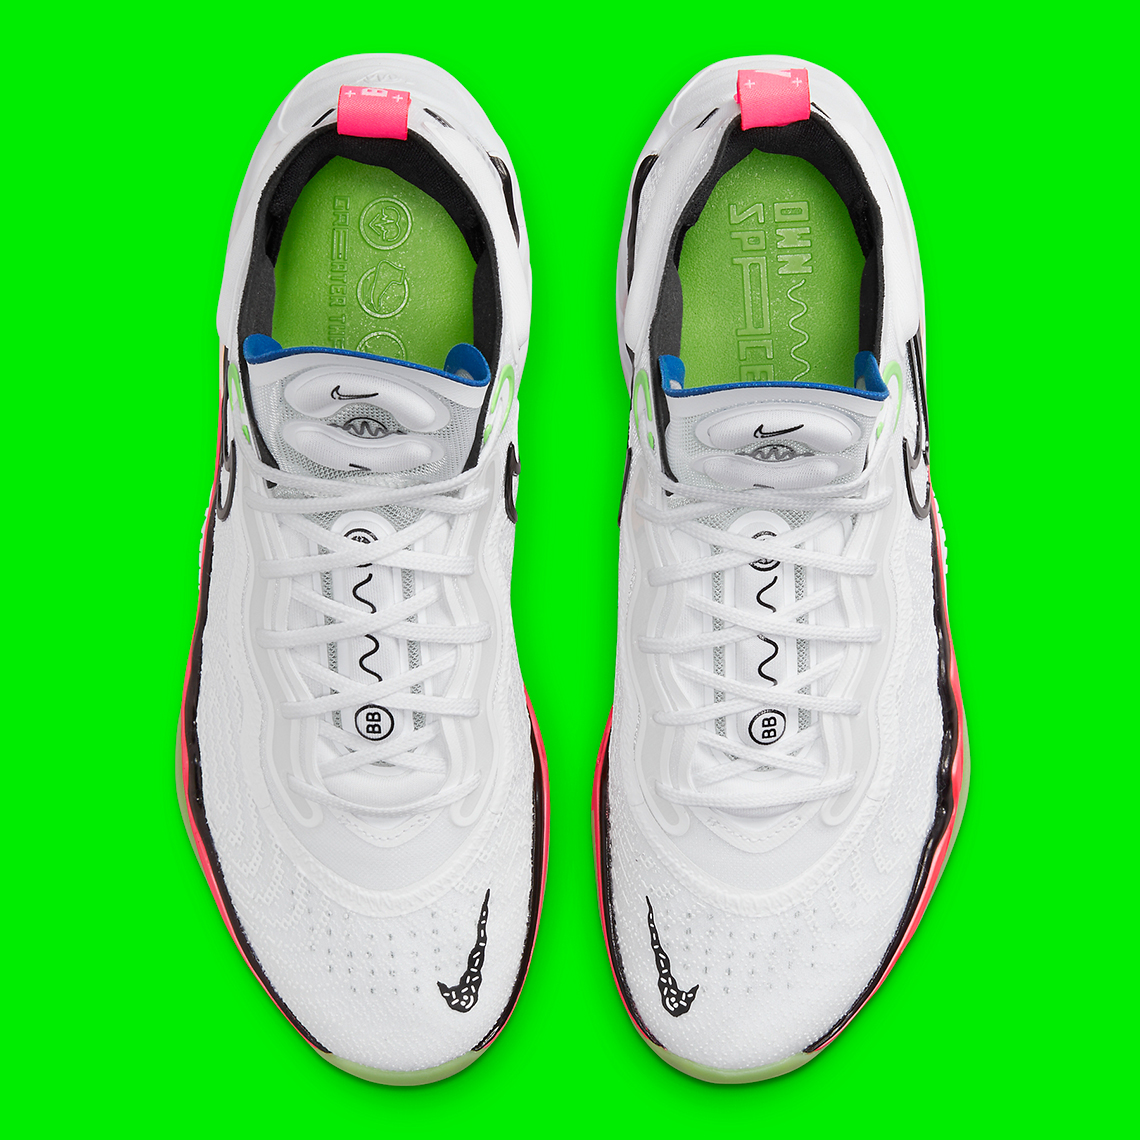 1649373064 796 Gradientes brillantes y neones cubren el Nike Zoom GT Run